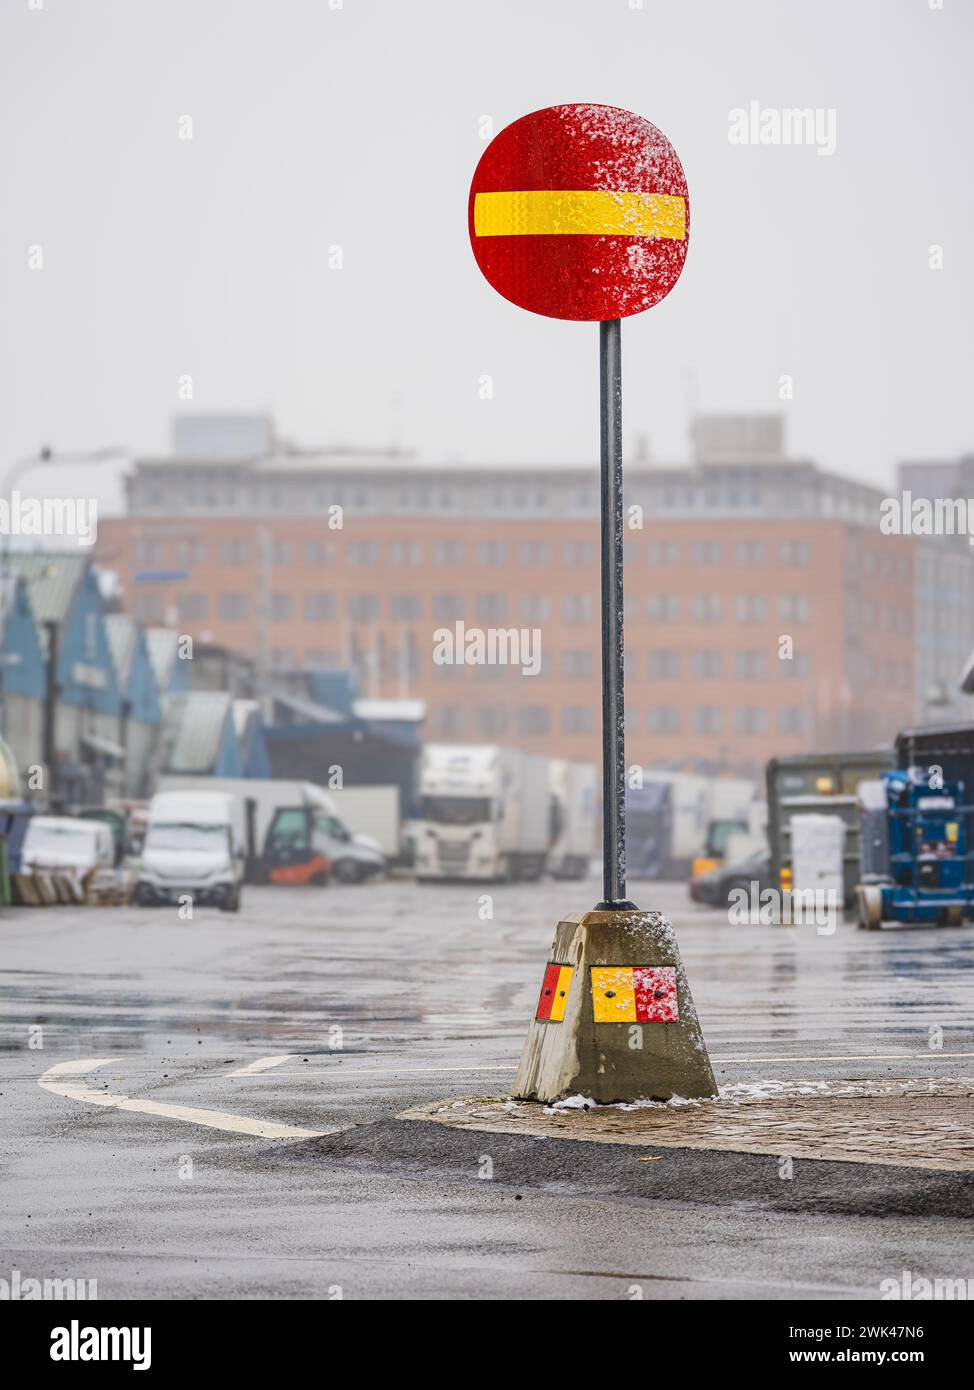 L'image montre un panneau d'interdiction d'entrée rouge et jaune vif sur une rue urbaine humide avec des gouttes de pluie ou de la brume visibles. L'atmosphère brumeuse crée un flou aro Banque D'Images